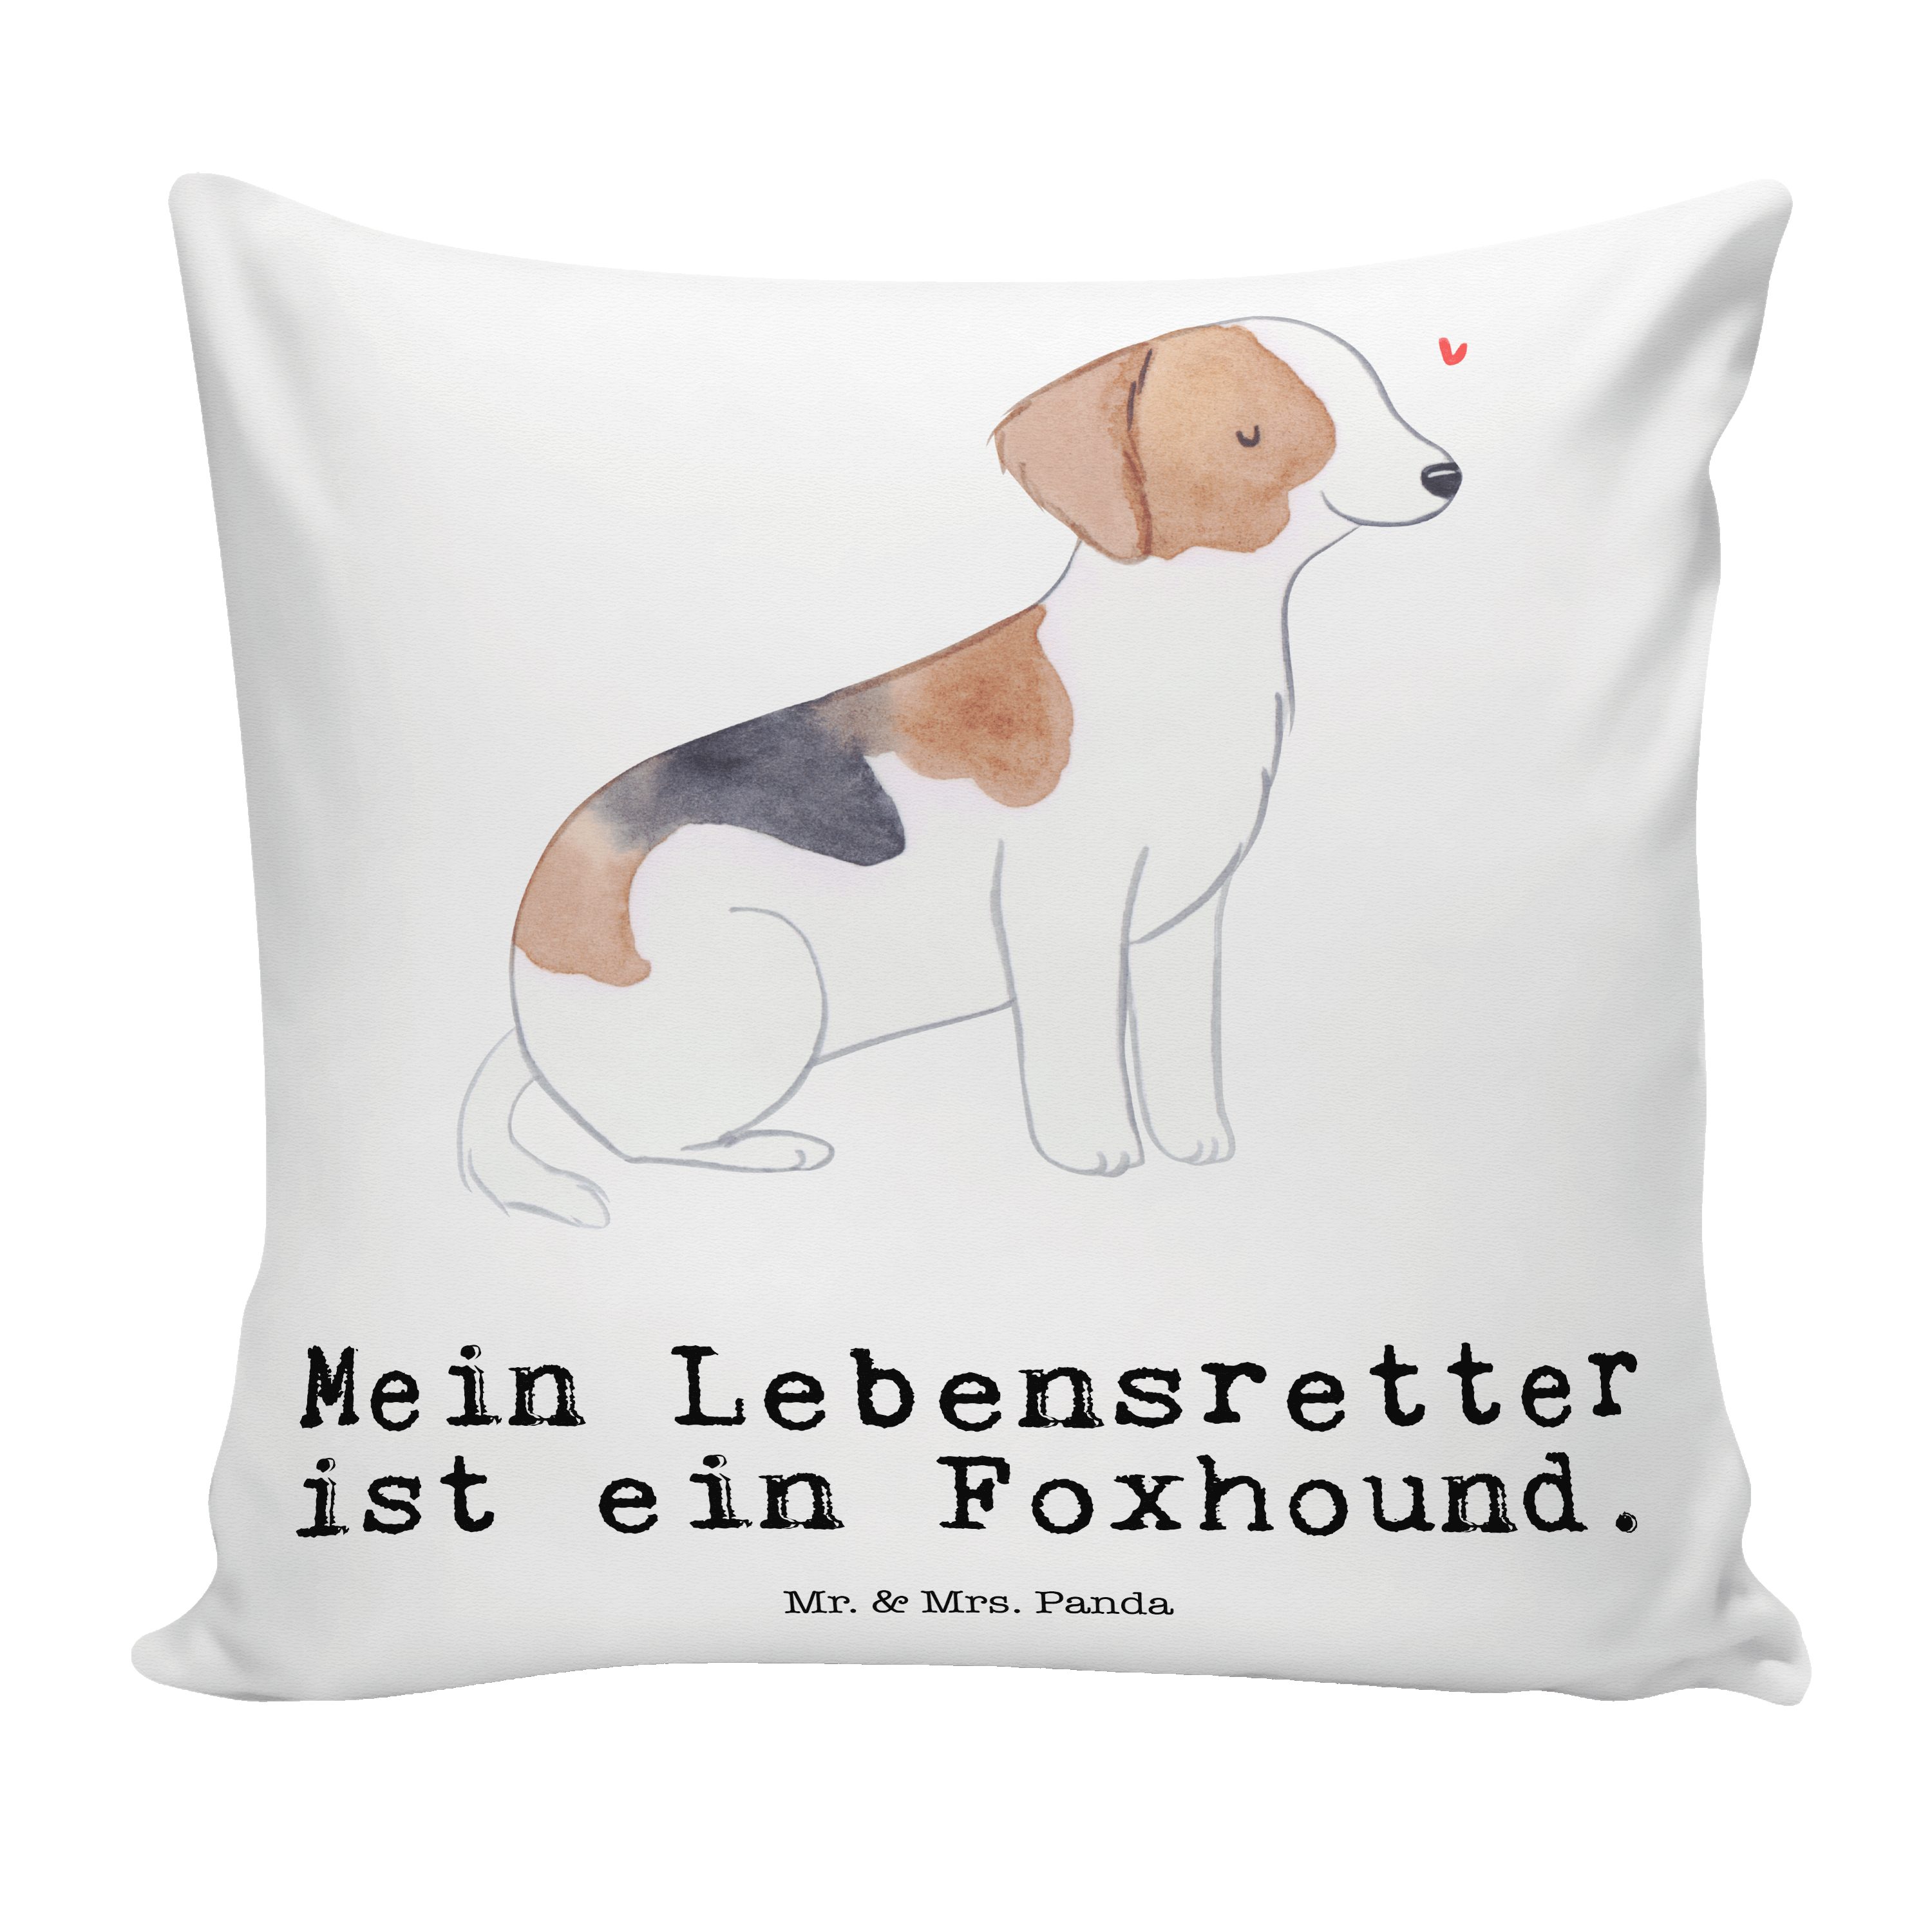 Mr. & Mrs. Panda Dekokissen Foxhound Lebensretter - Weiß - Geschenk, Hund, Motivkissen, Jagdhund